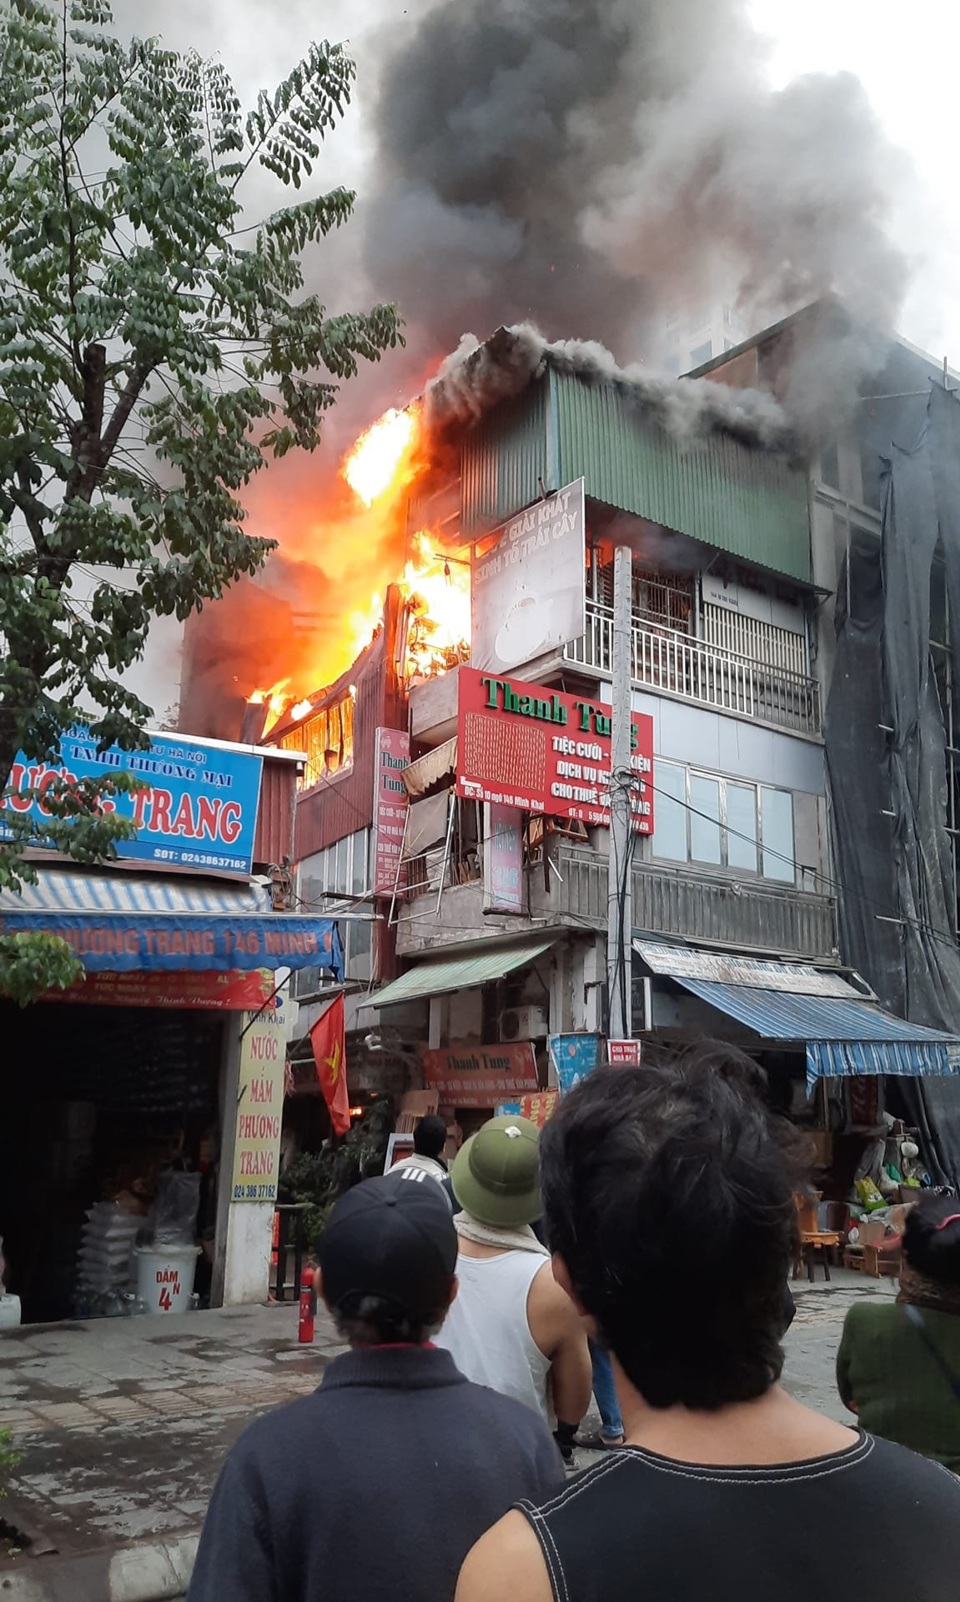 Hà Nội: Ngôi nhà bốc cháy dữ dội trên phố Minh Khai  - Ảnh 1